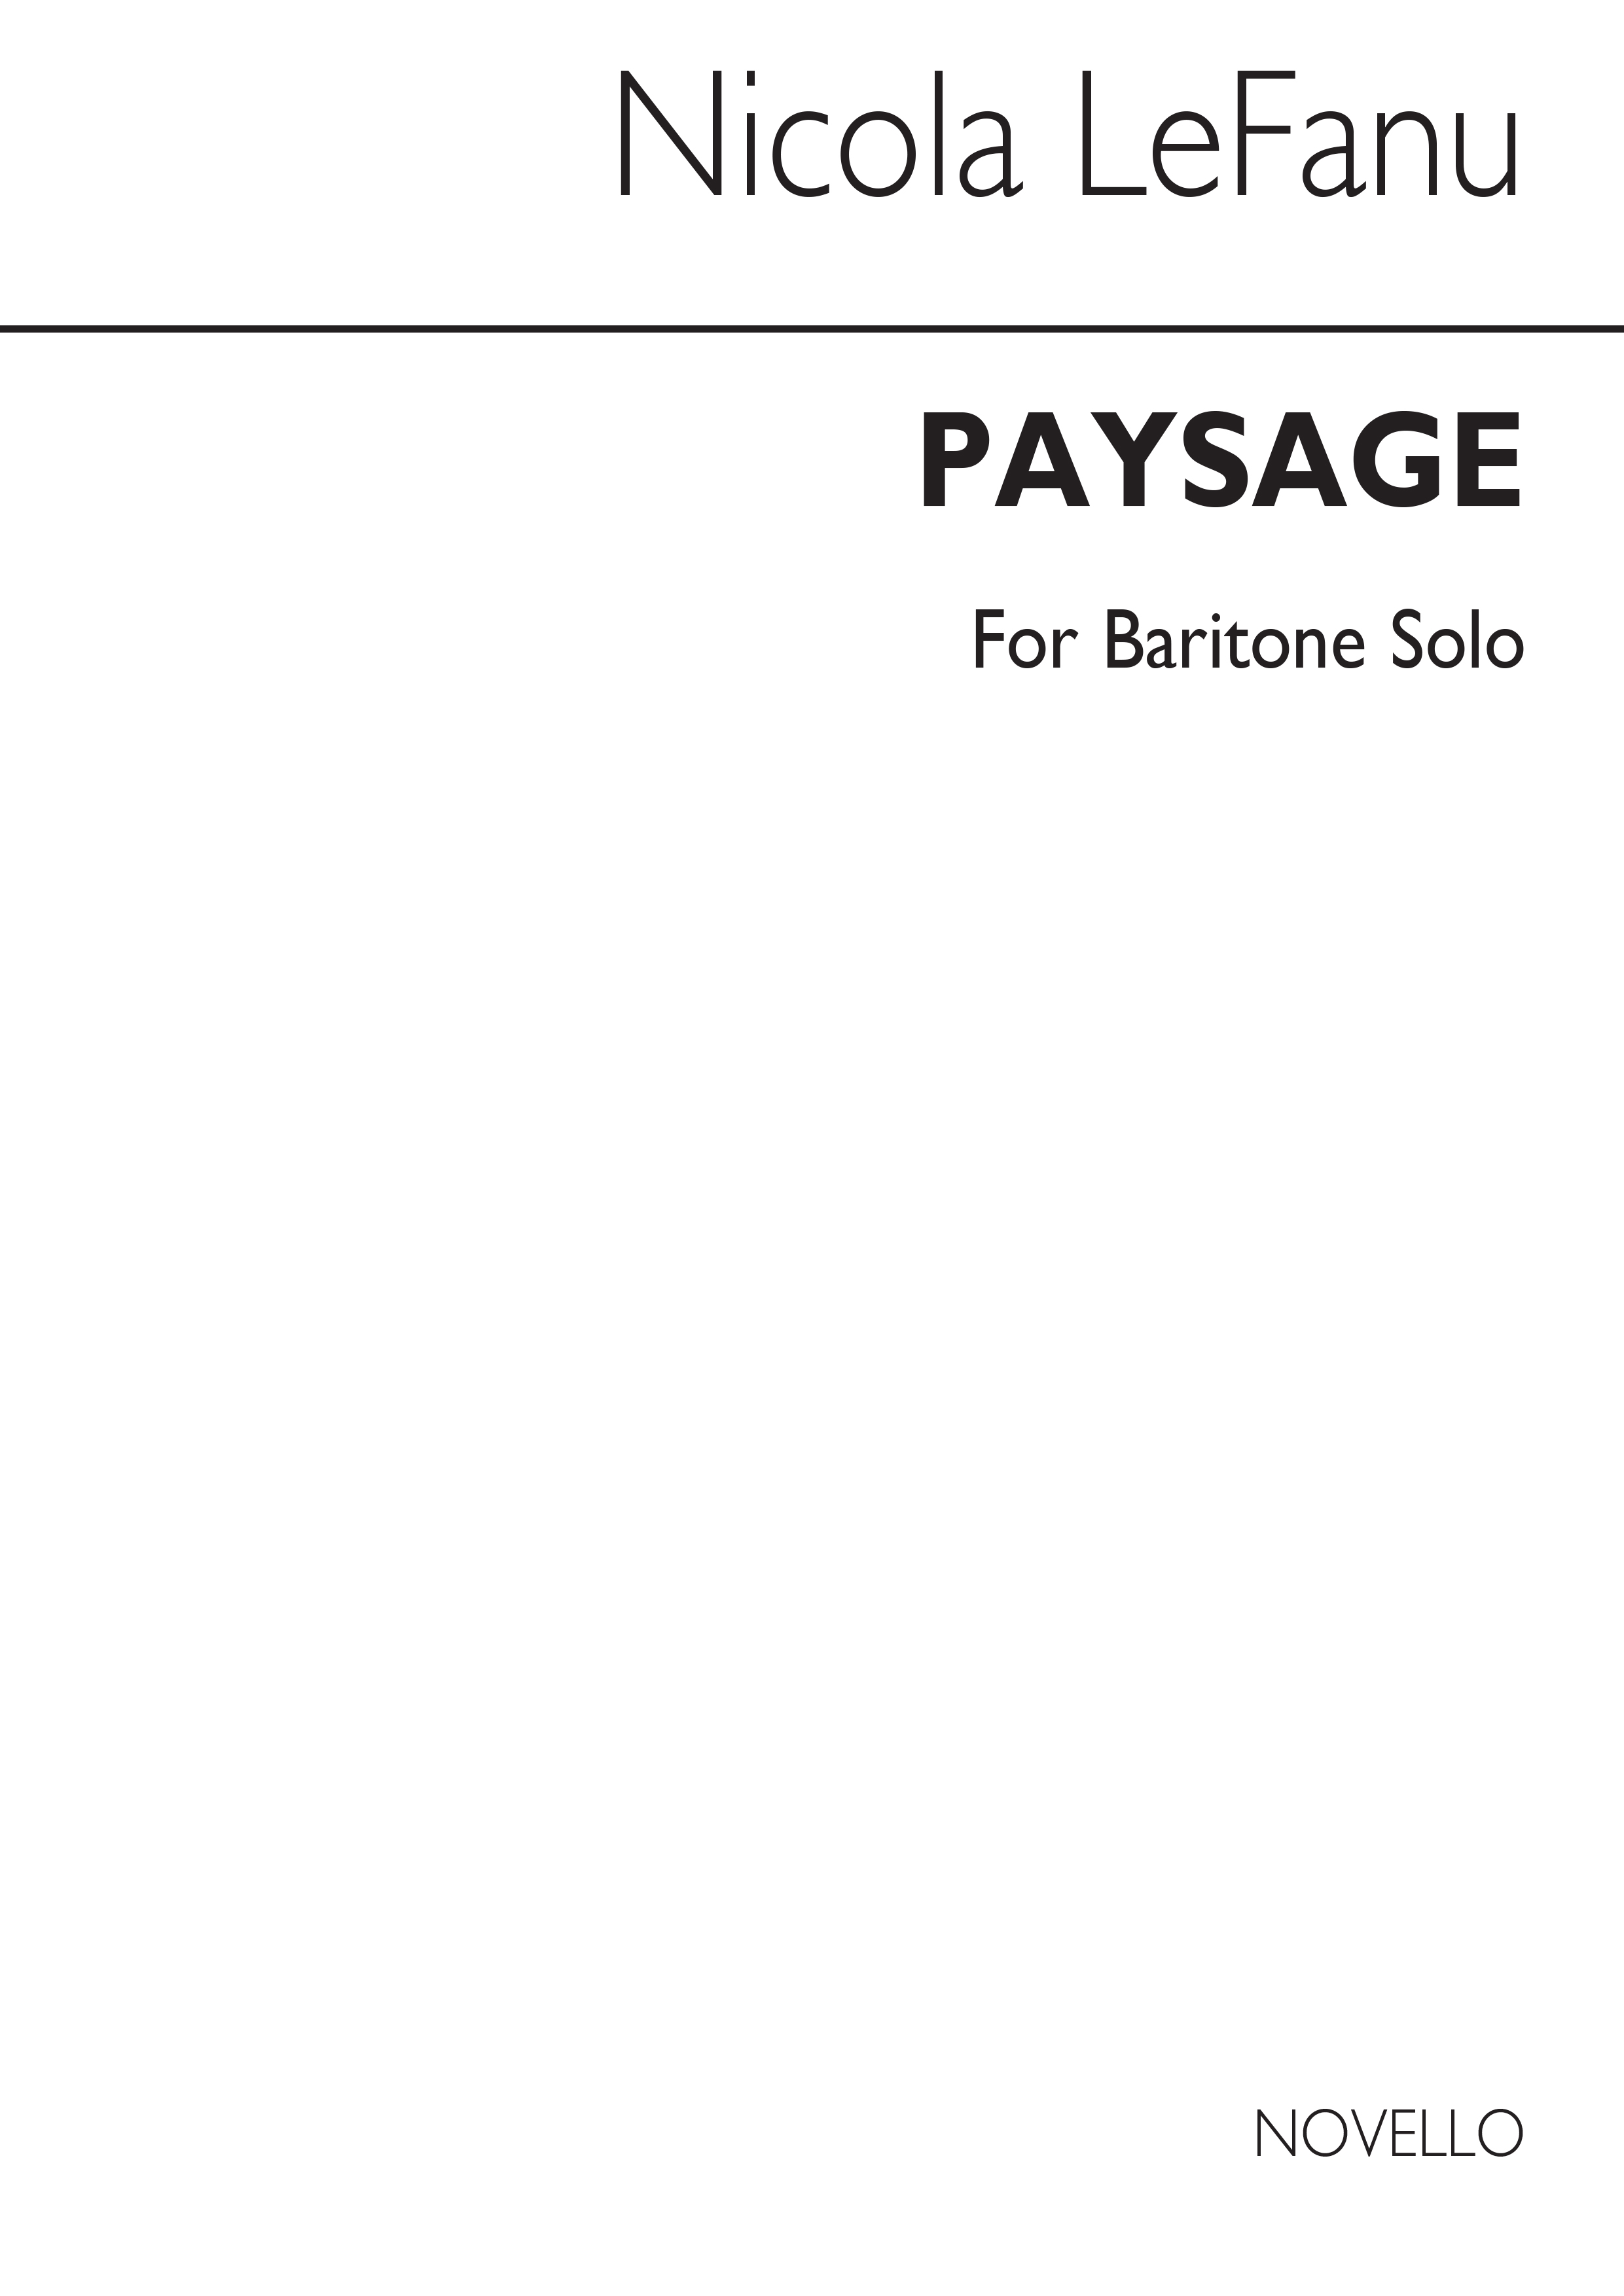 LeFanu: Paysage for Baritone Solo